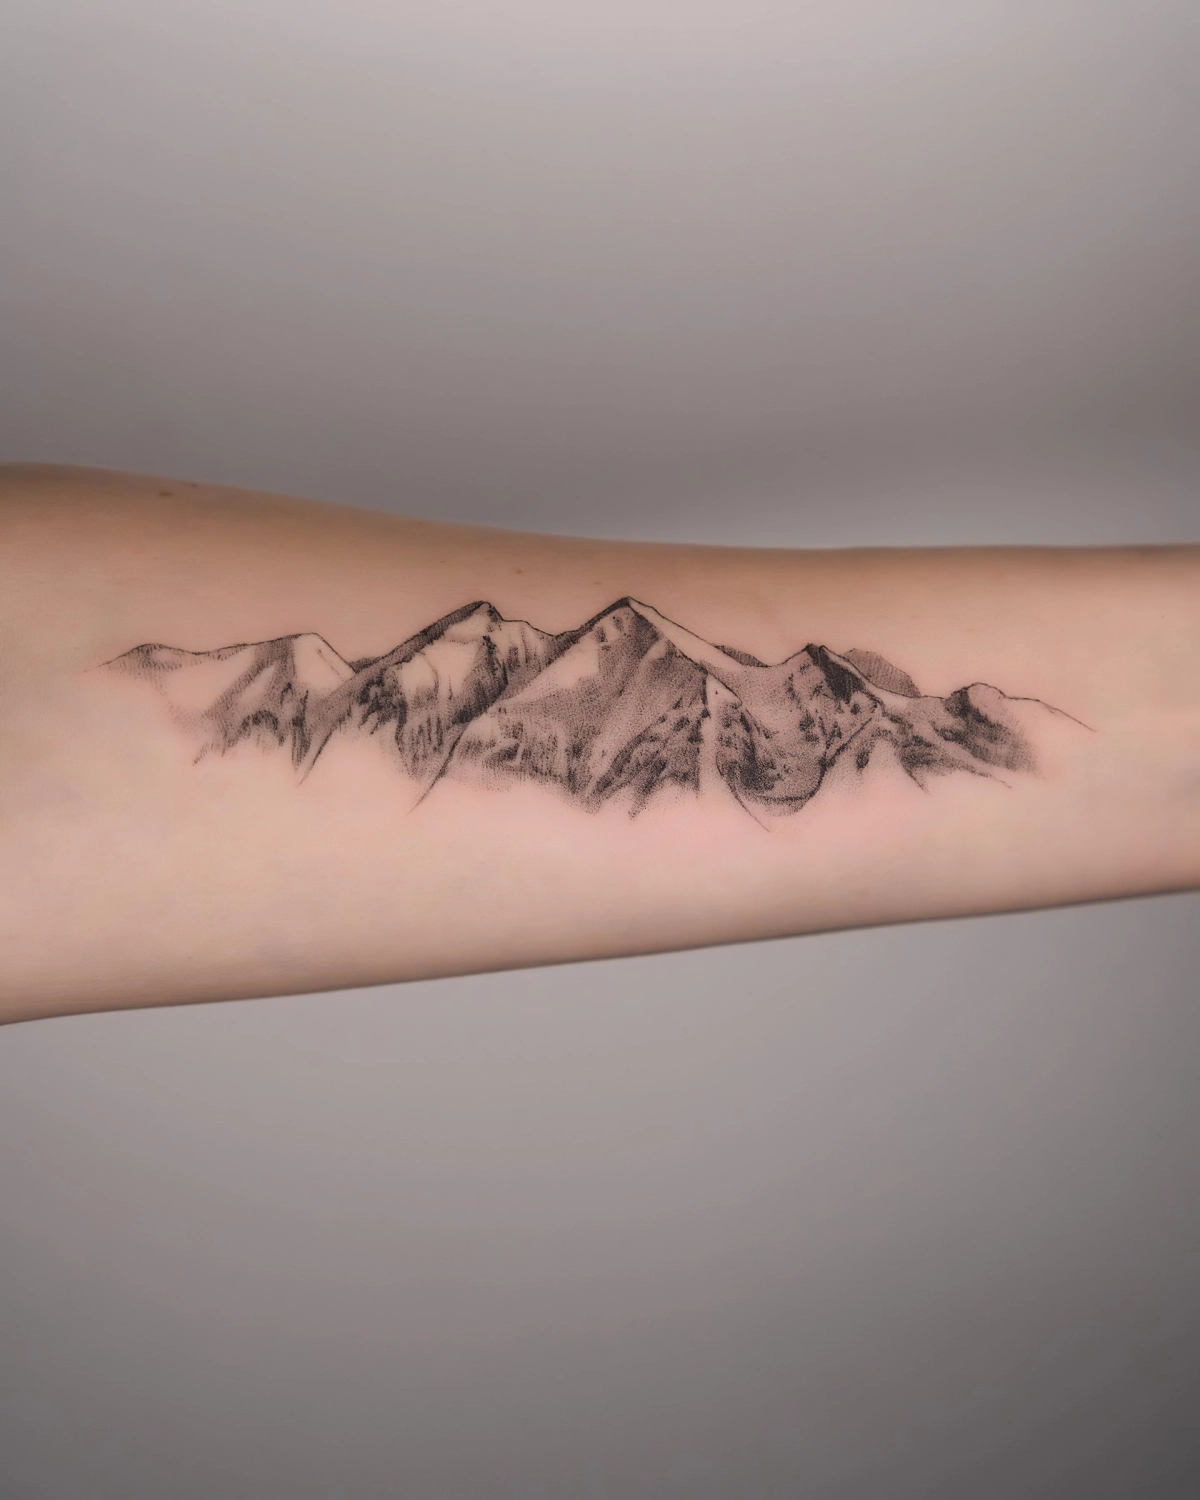 signification tatouage de montagne sur bras paysage realiste